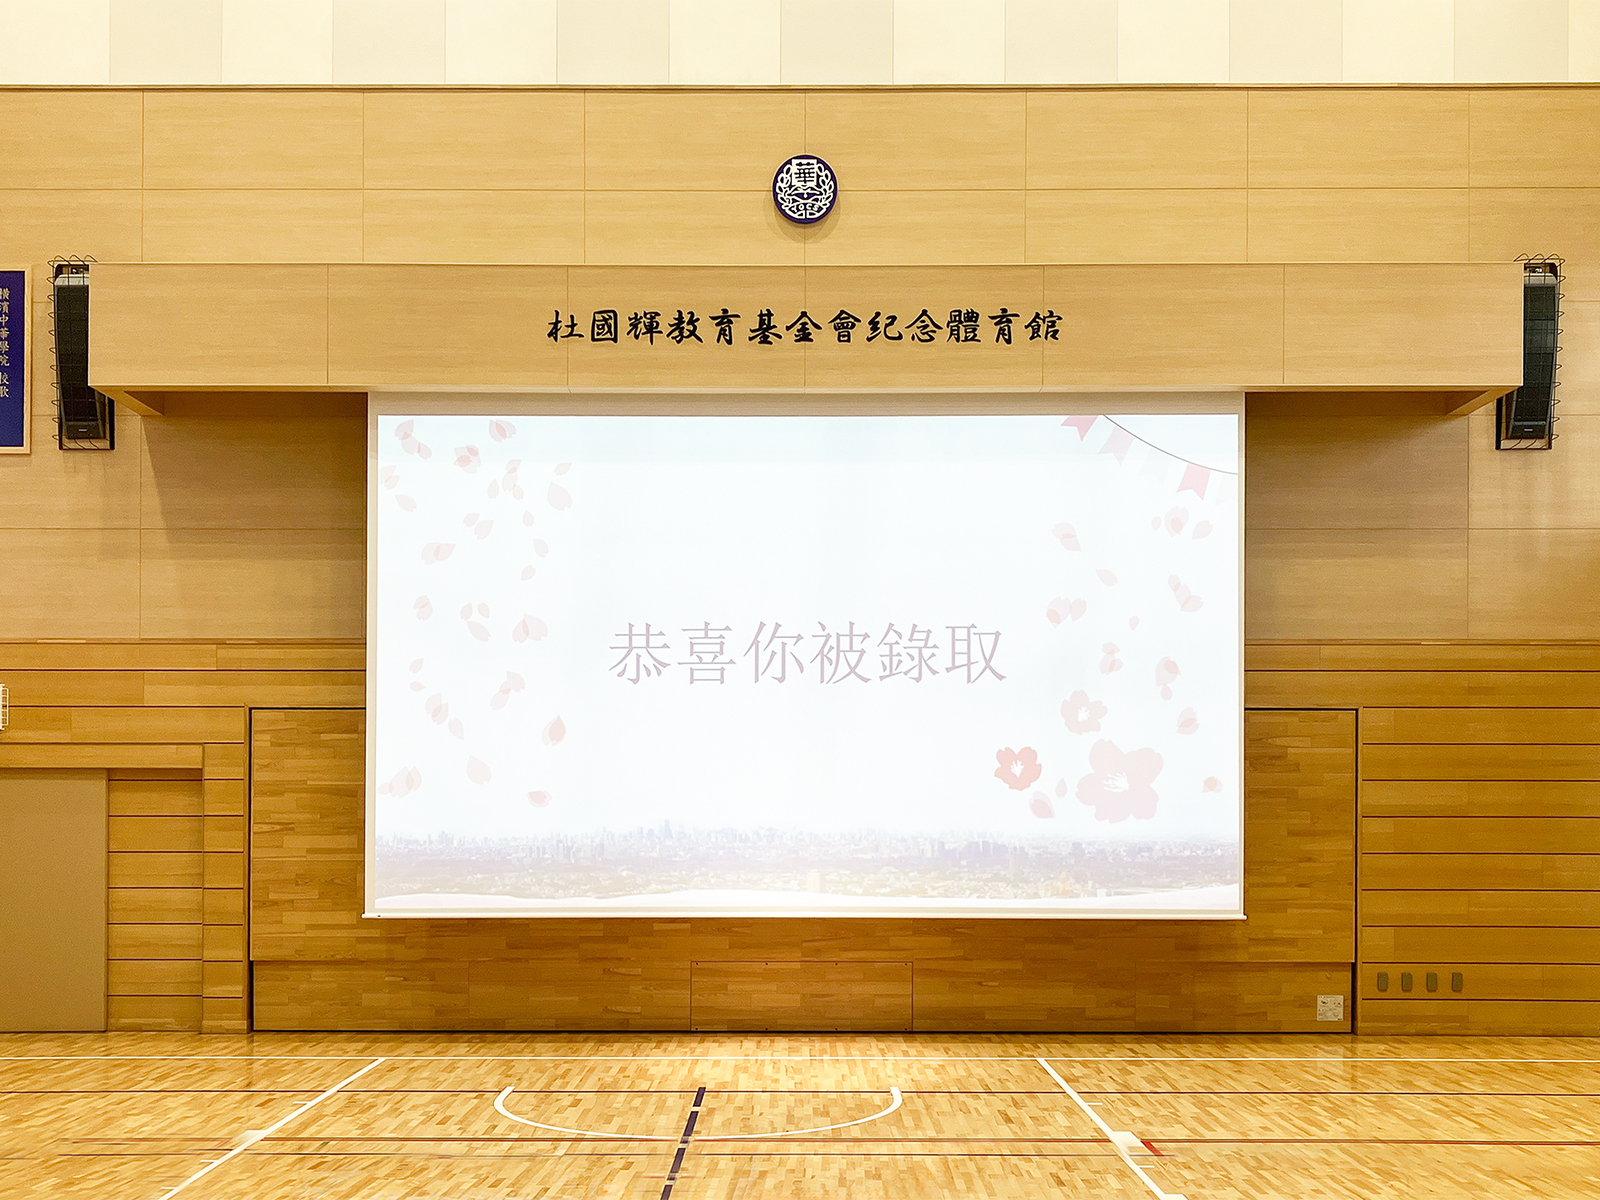 【Discover OS】体育館への大型スクリーン分割納入｜横濱中華學院 様